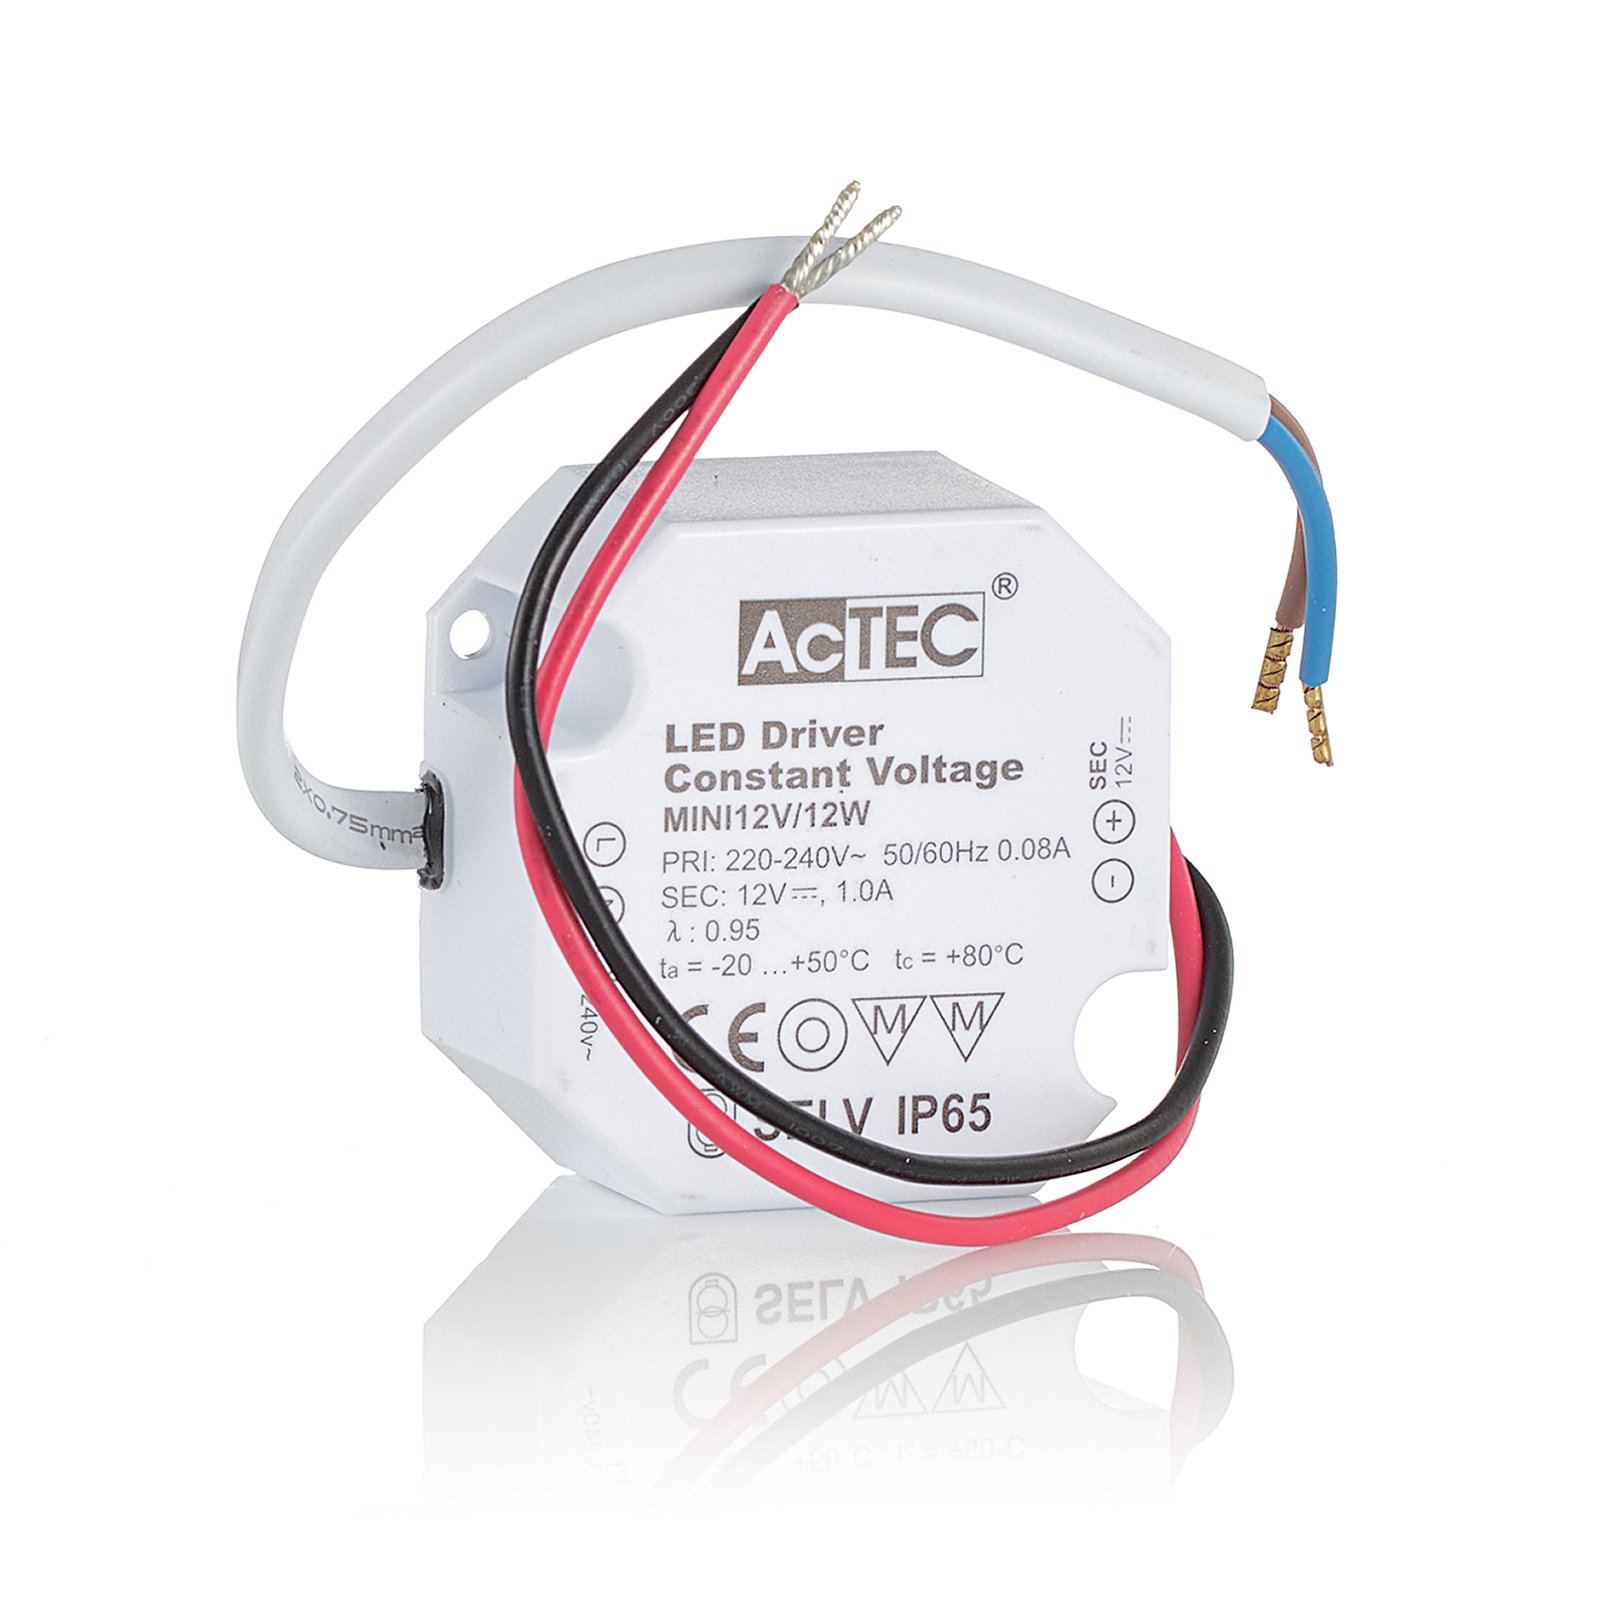 AcTEC Mini LED driver CV 12V, 12W, IP65